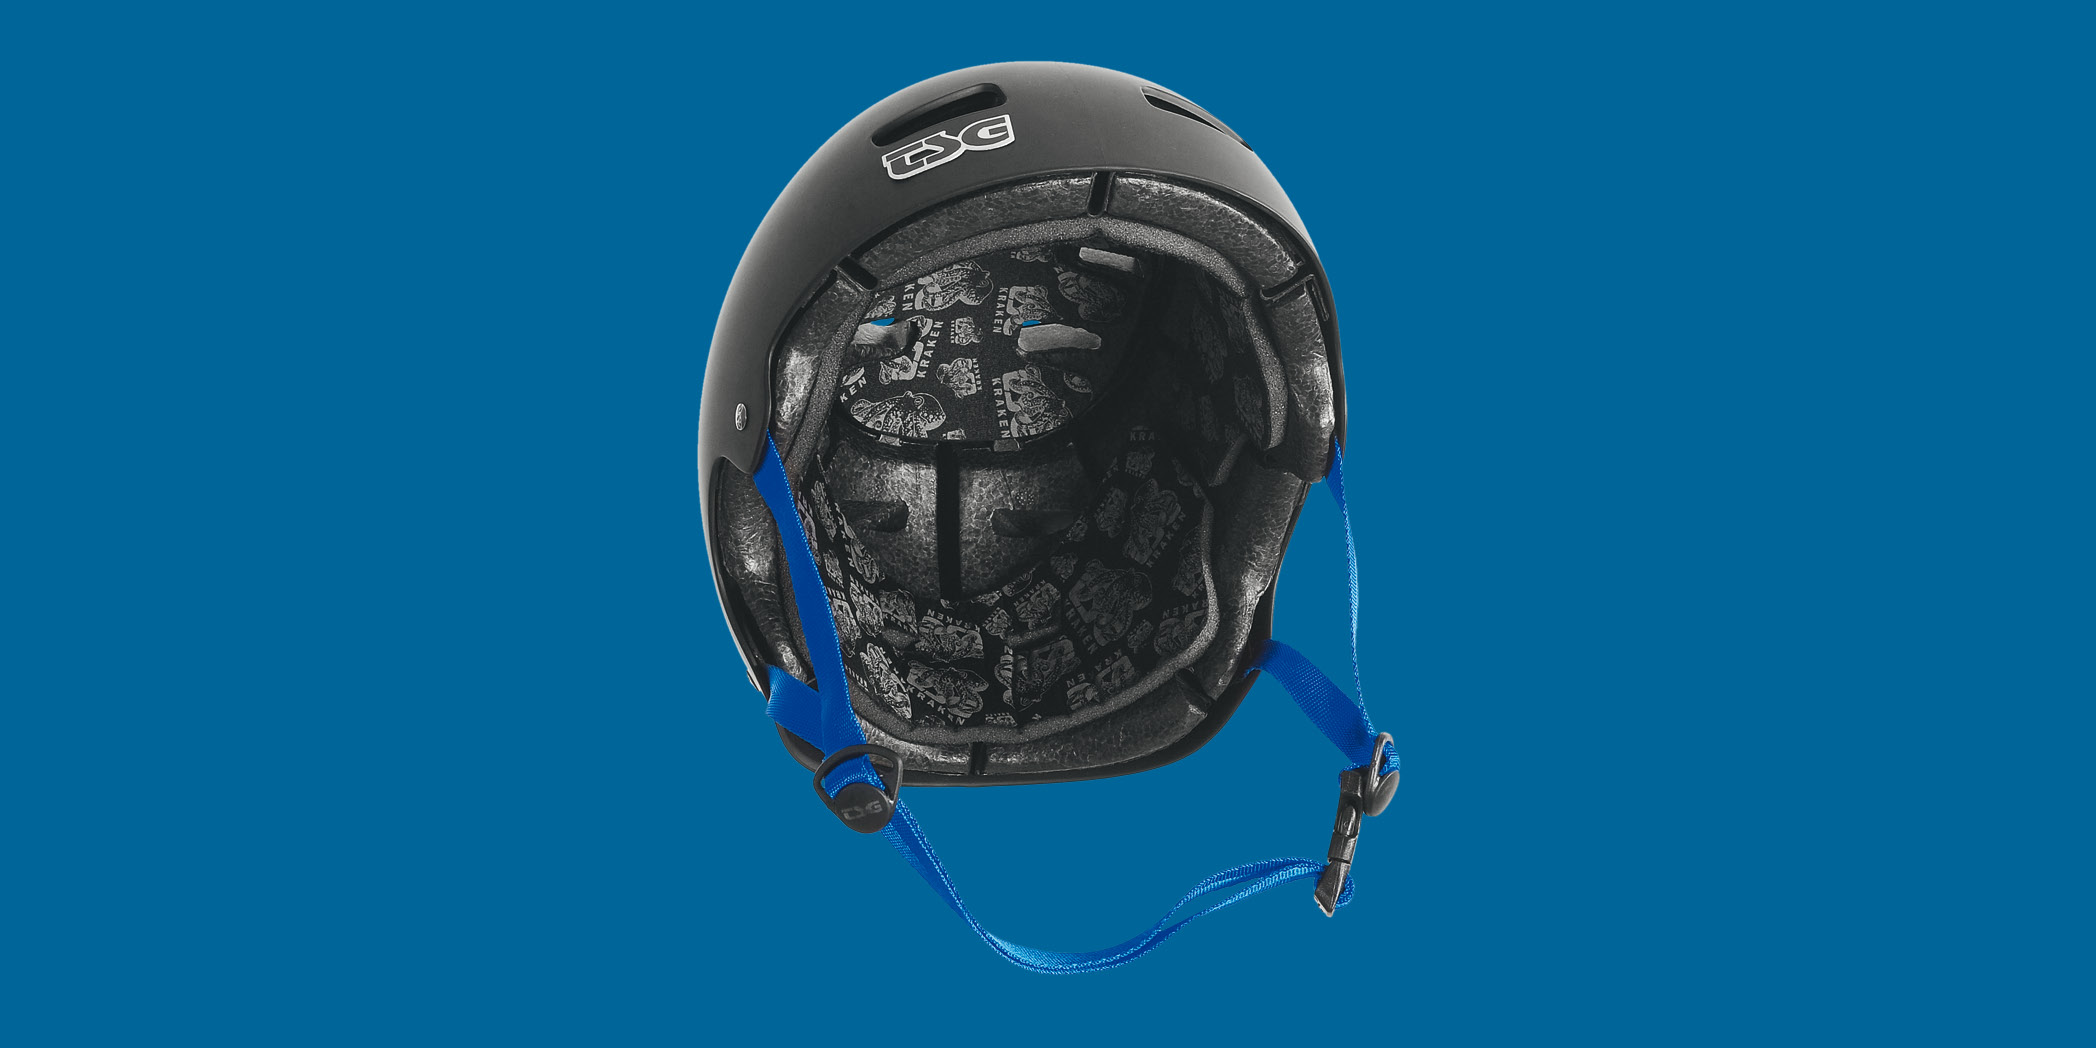 2010_tsg-history_kraken-helmet.jpg